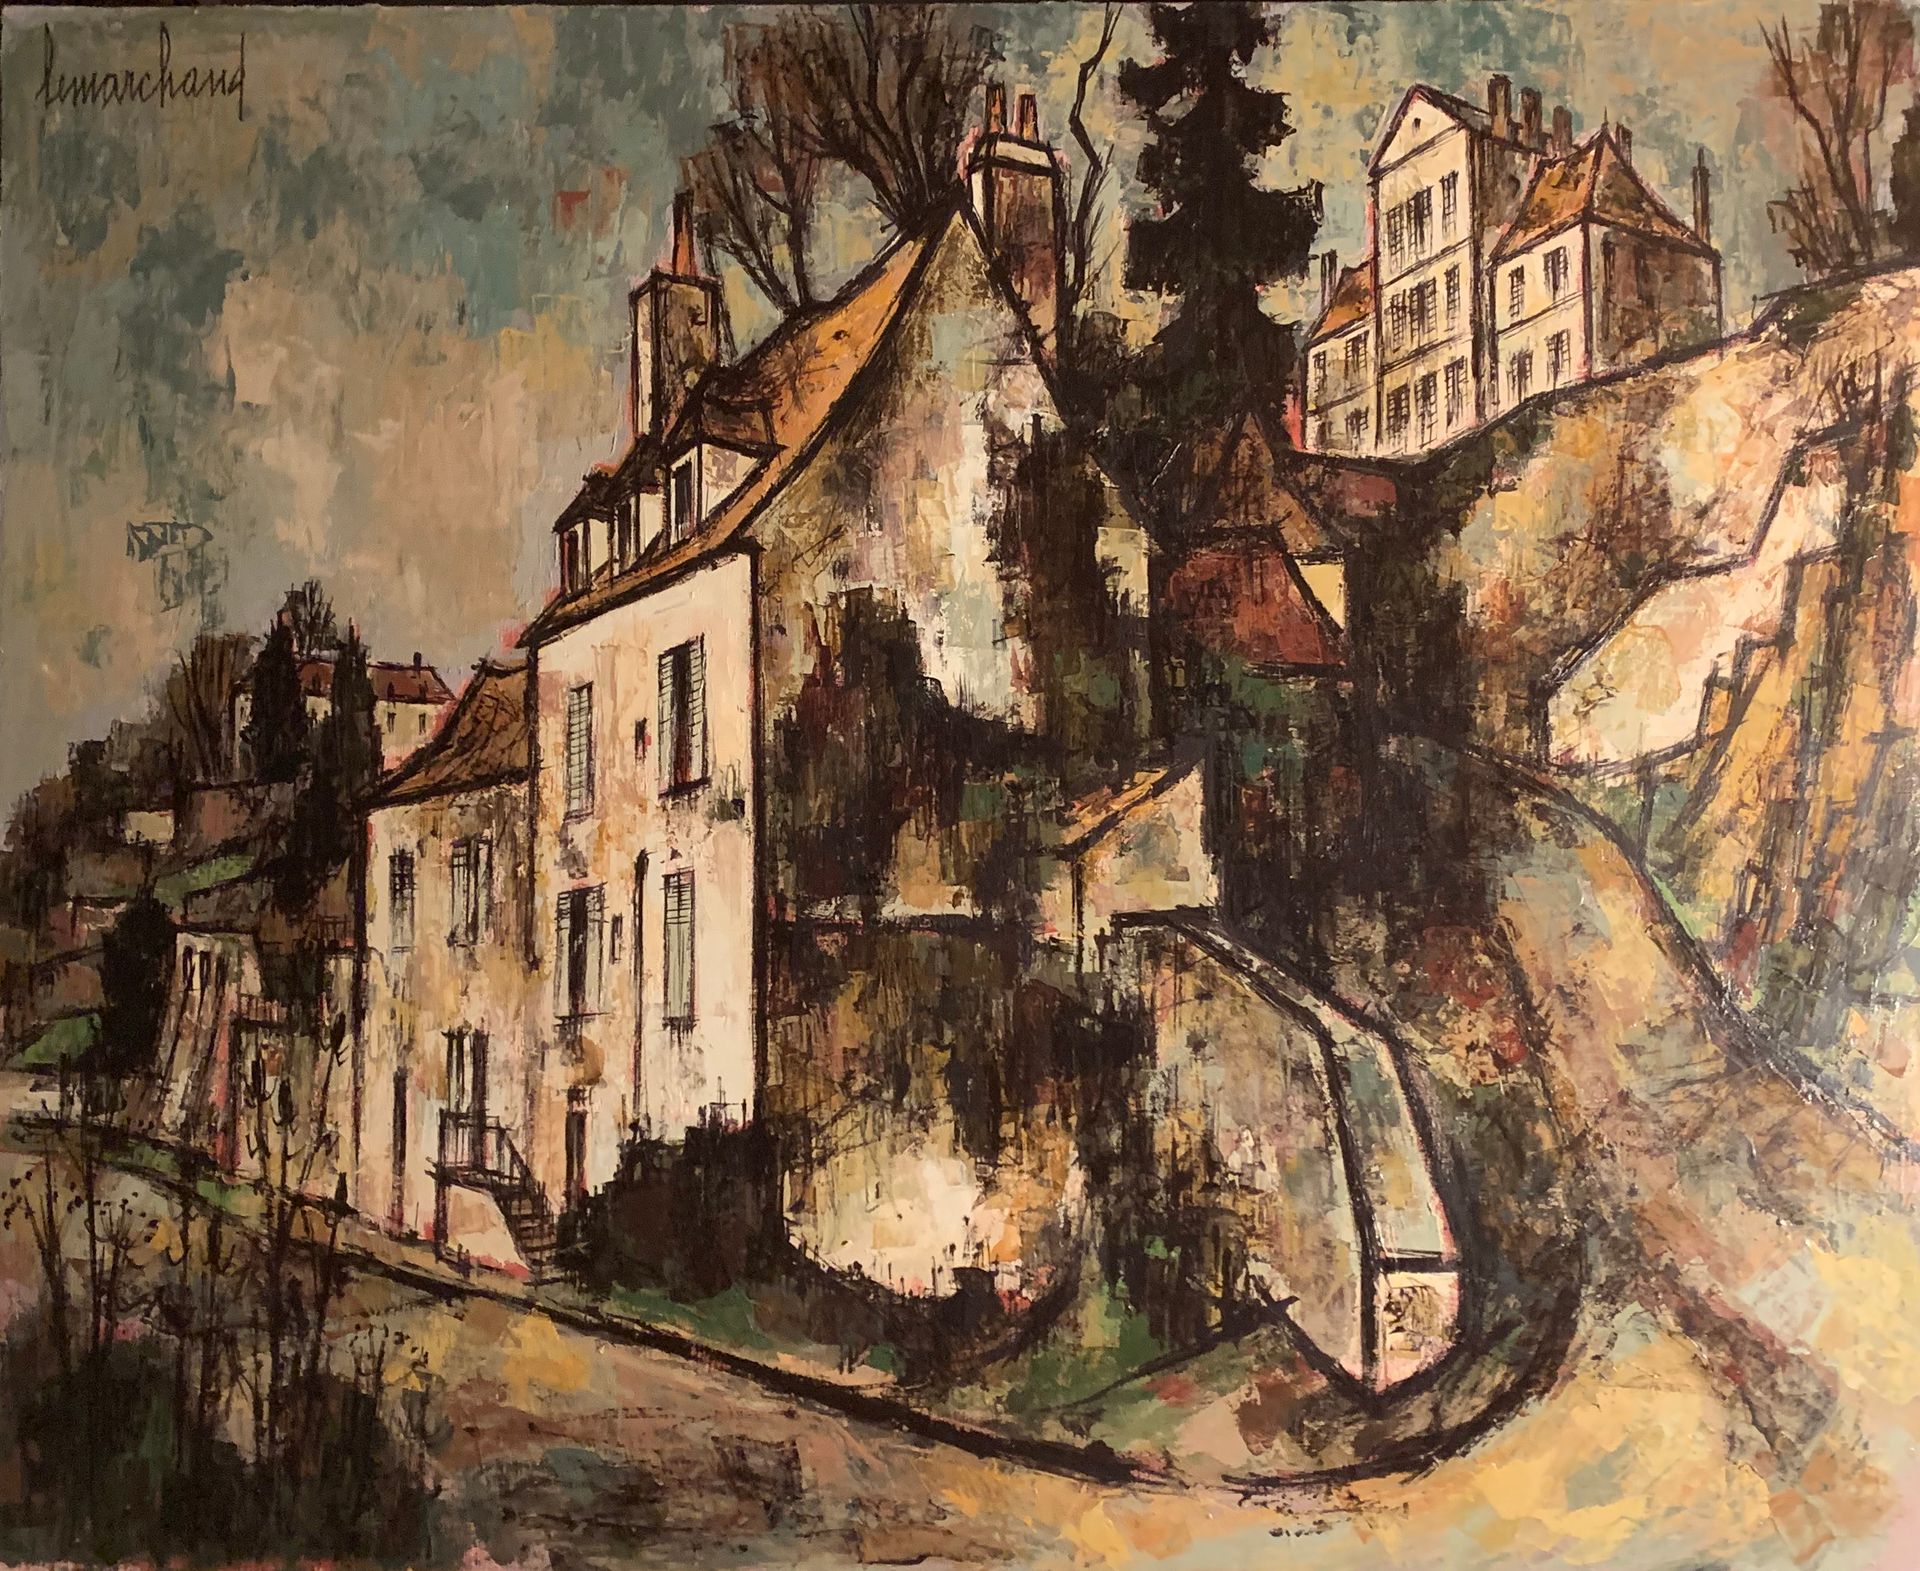 Null 皮埃尔-莱马赫德 (1906-1970)

阿瓦隆的小巷和房屋，梯田

布面油画，左上角有签名

81 x 100厘米。